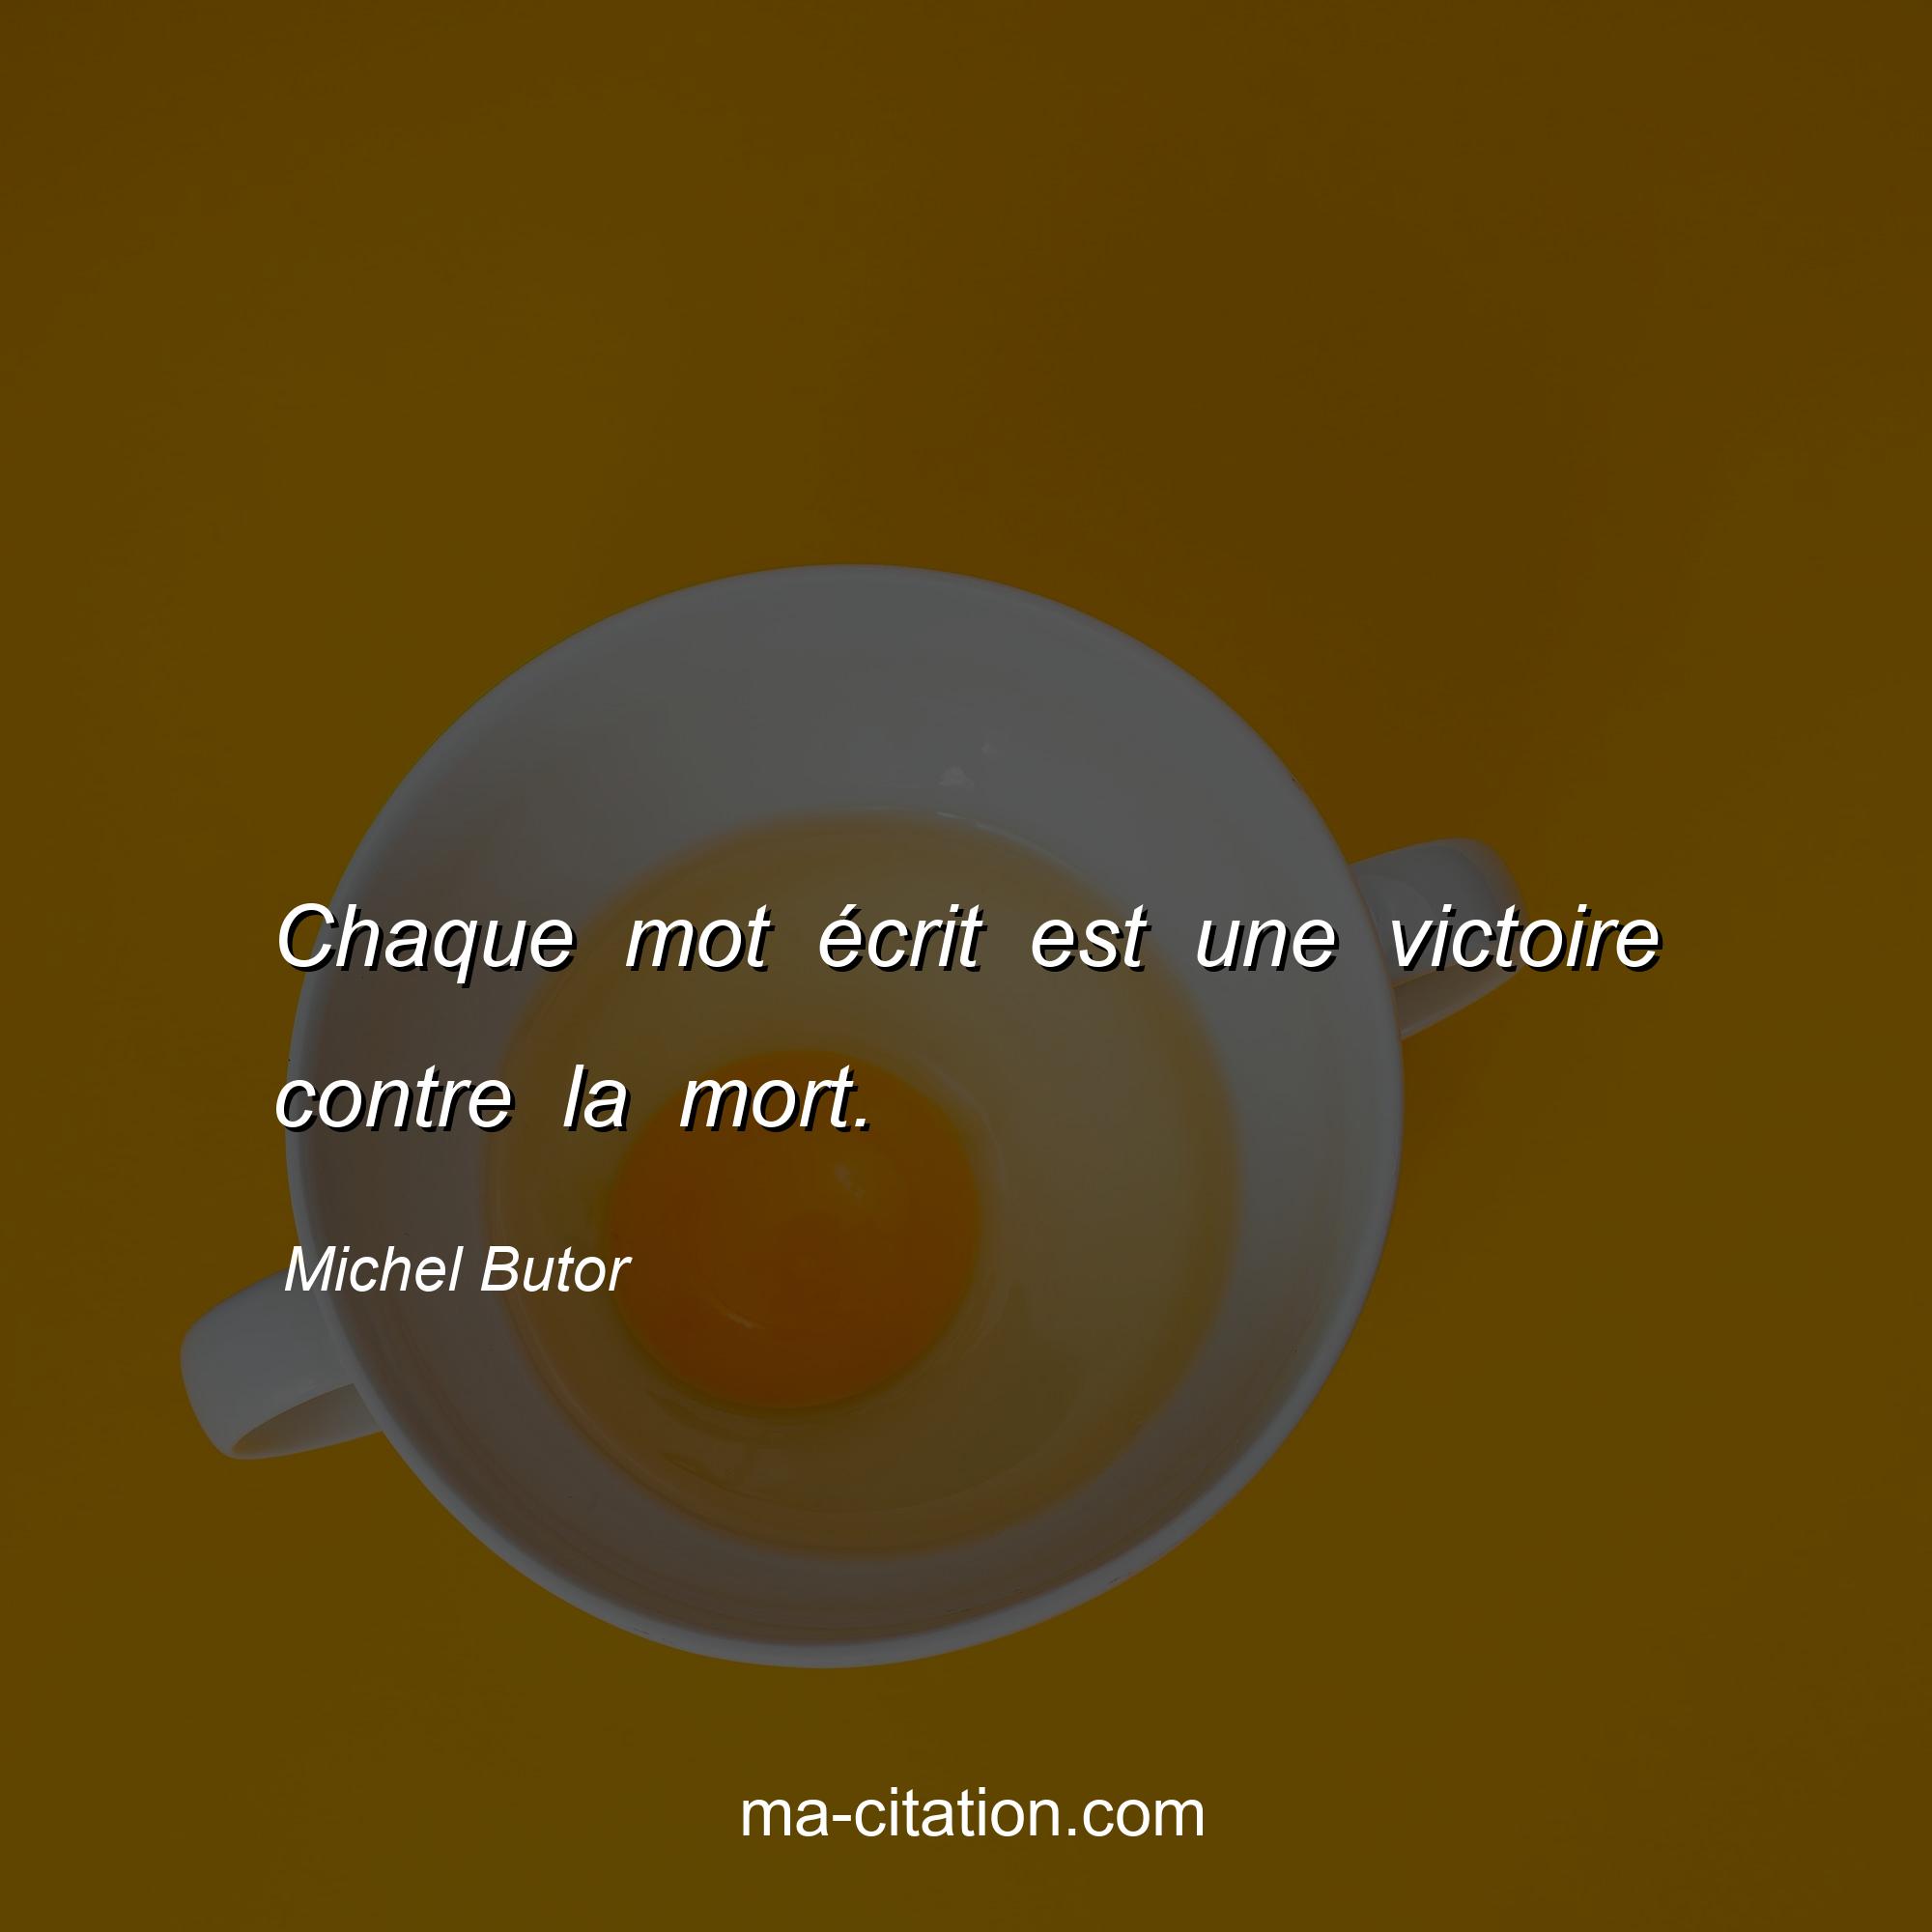 Michel Butor : Chaque mot écrit est une victoire contre la mort.